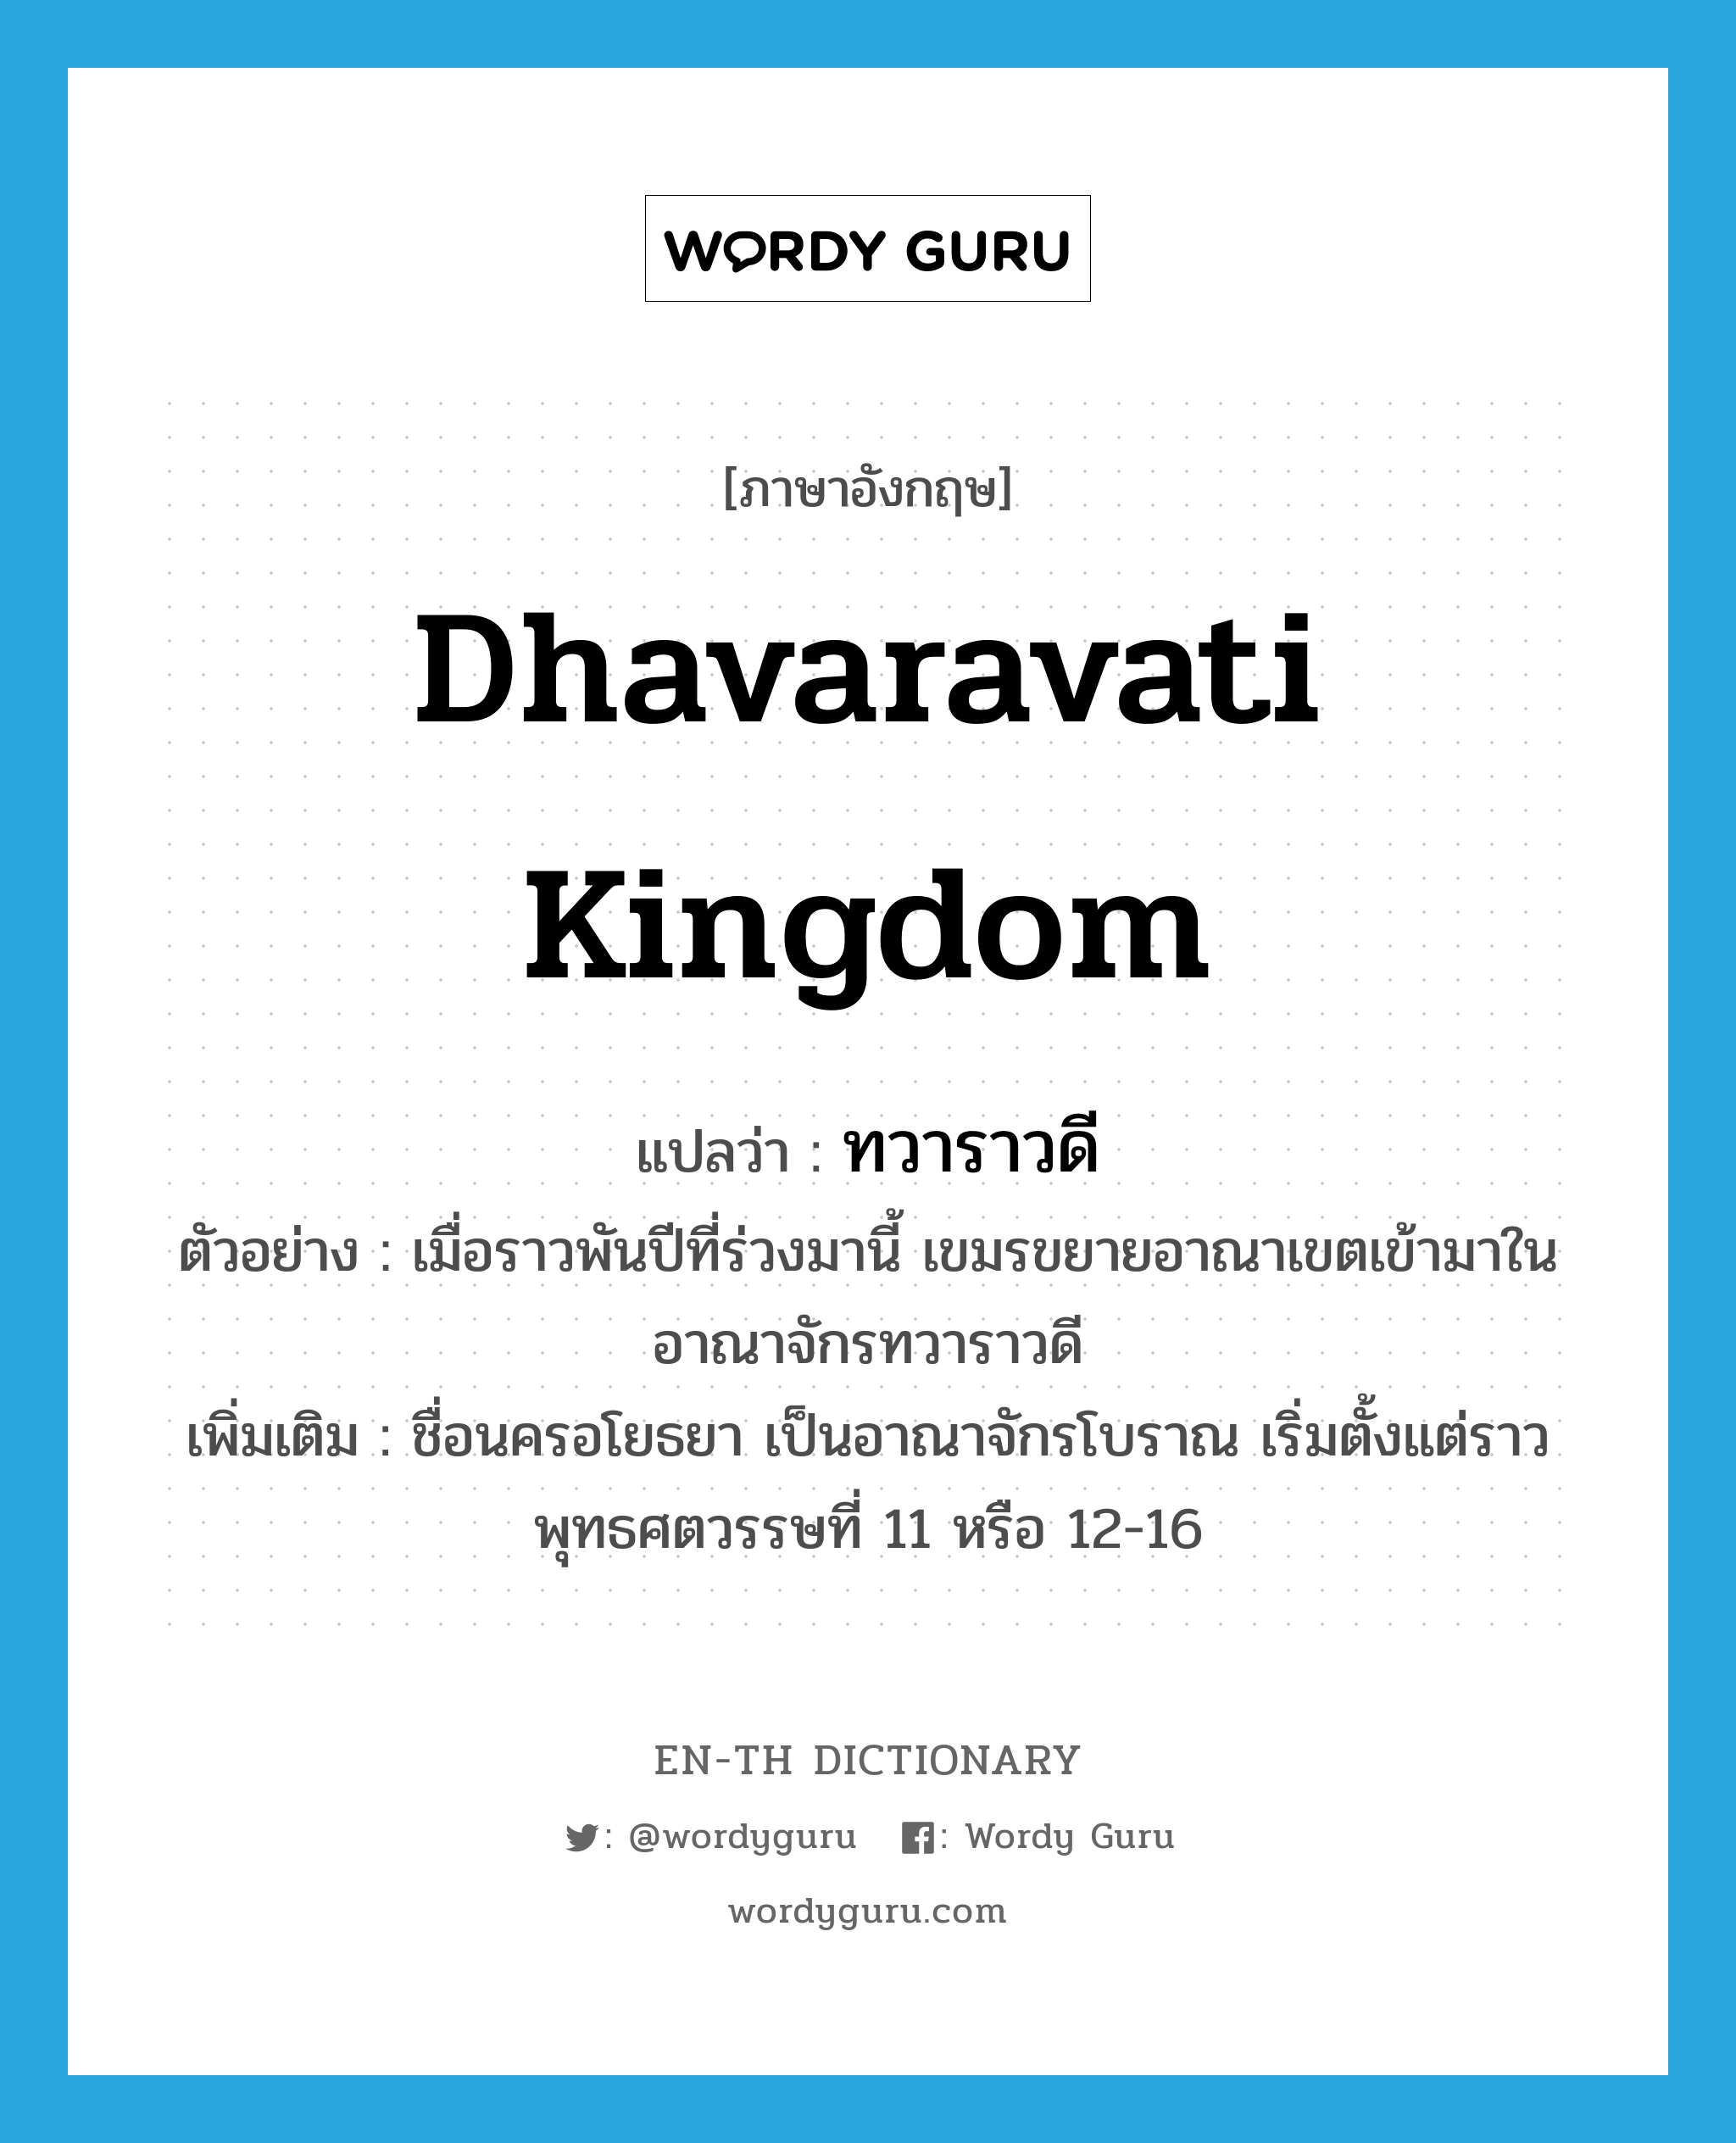 ทวาราวดี ภาษาอังกฤษ?, คำศัพท์ภาษาอังกฤษ ทวาราวดี แปลว่า Dhavaravati Kingdom ประเภท N ตัวอย่าง เมื่อราวพันปีที่ร่วงมานี้ เขมรขยายอาณาเขตเข้ามาในอาณาจักรทวาราวดี เพิ่มเติม ชื่อนครอโยธยา เป็นอาณาจักรโบราณ เริ่มตั้งแต่ราวพุทธศตวรรษที่ 11 หรือ 12-16 หมวด N